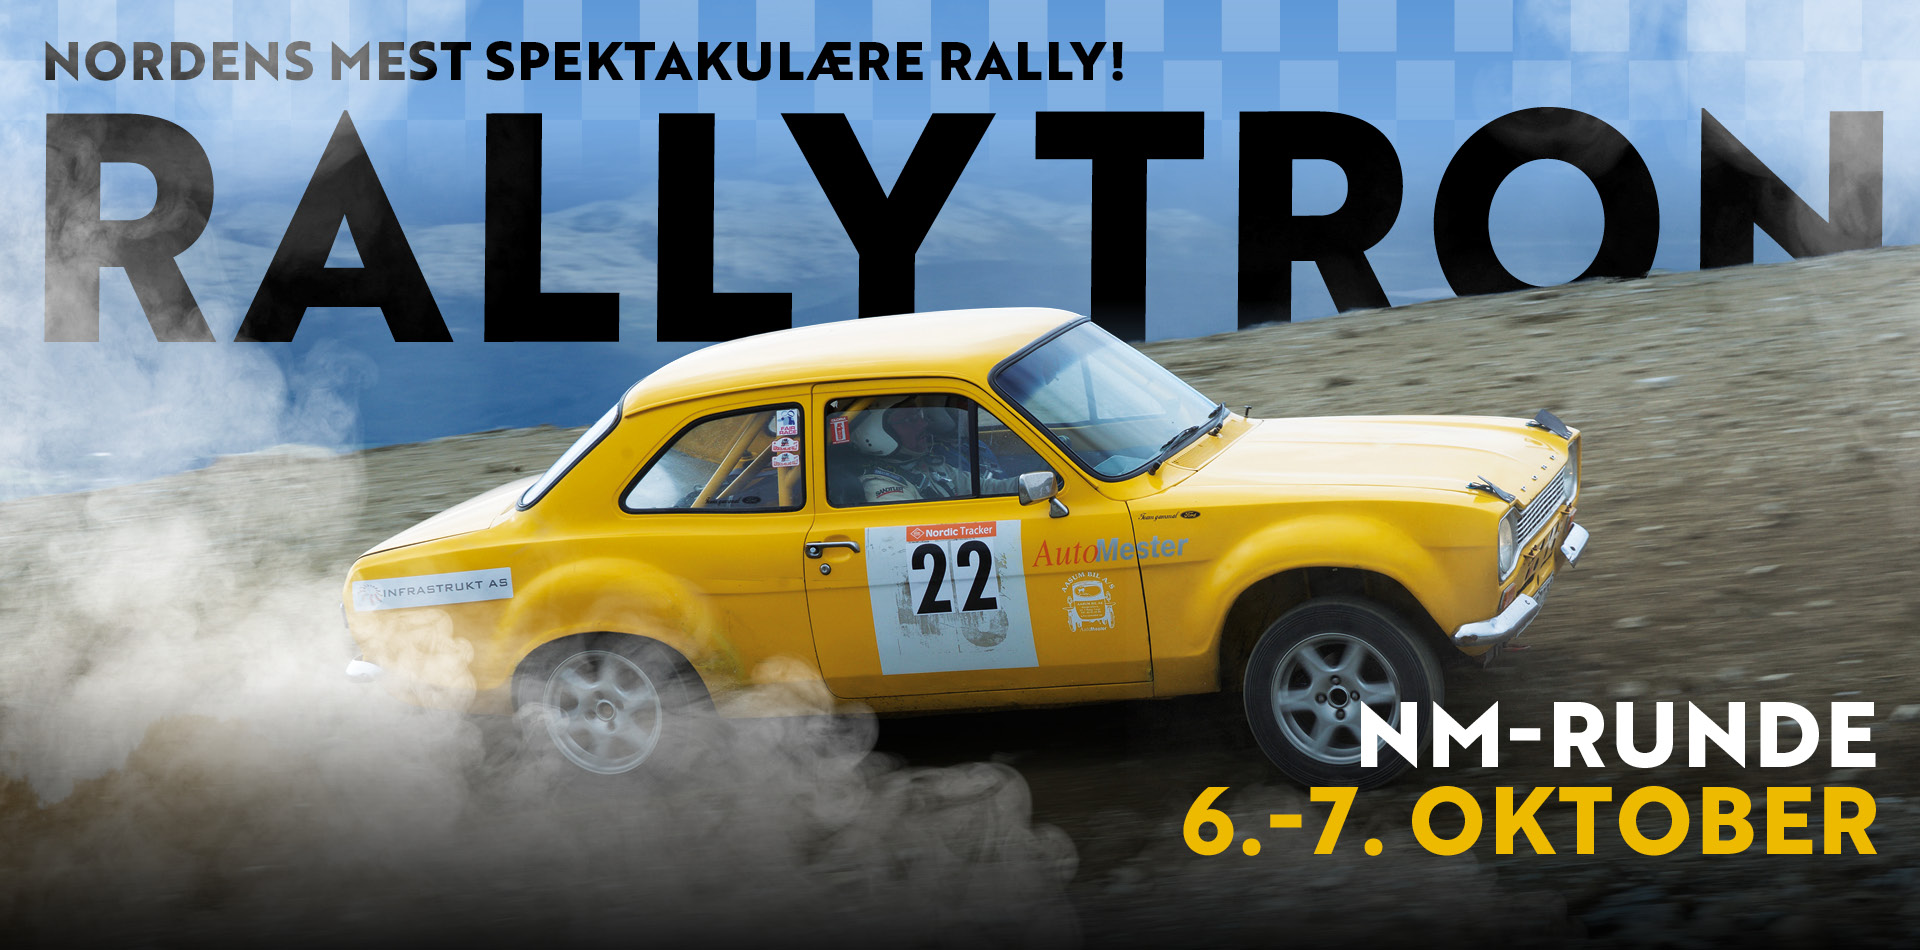 Rallybil oppover Tronfjell på Rally Tron, med tekst bak "Rally tron" og "nm runde 6-7 oktober"